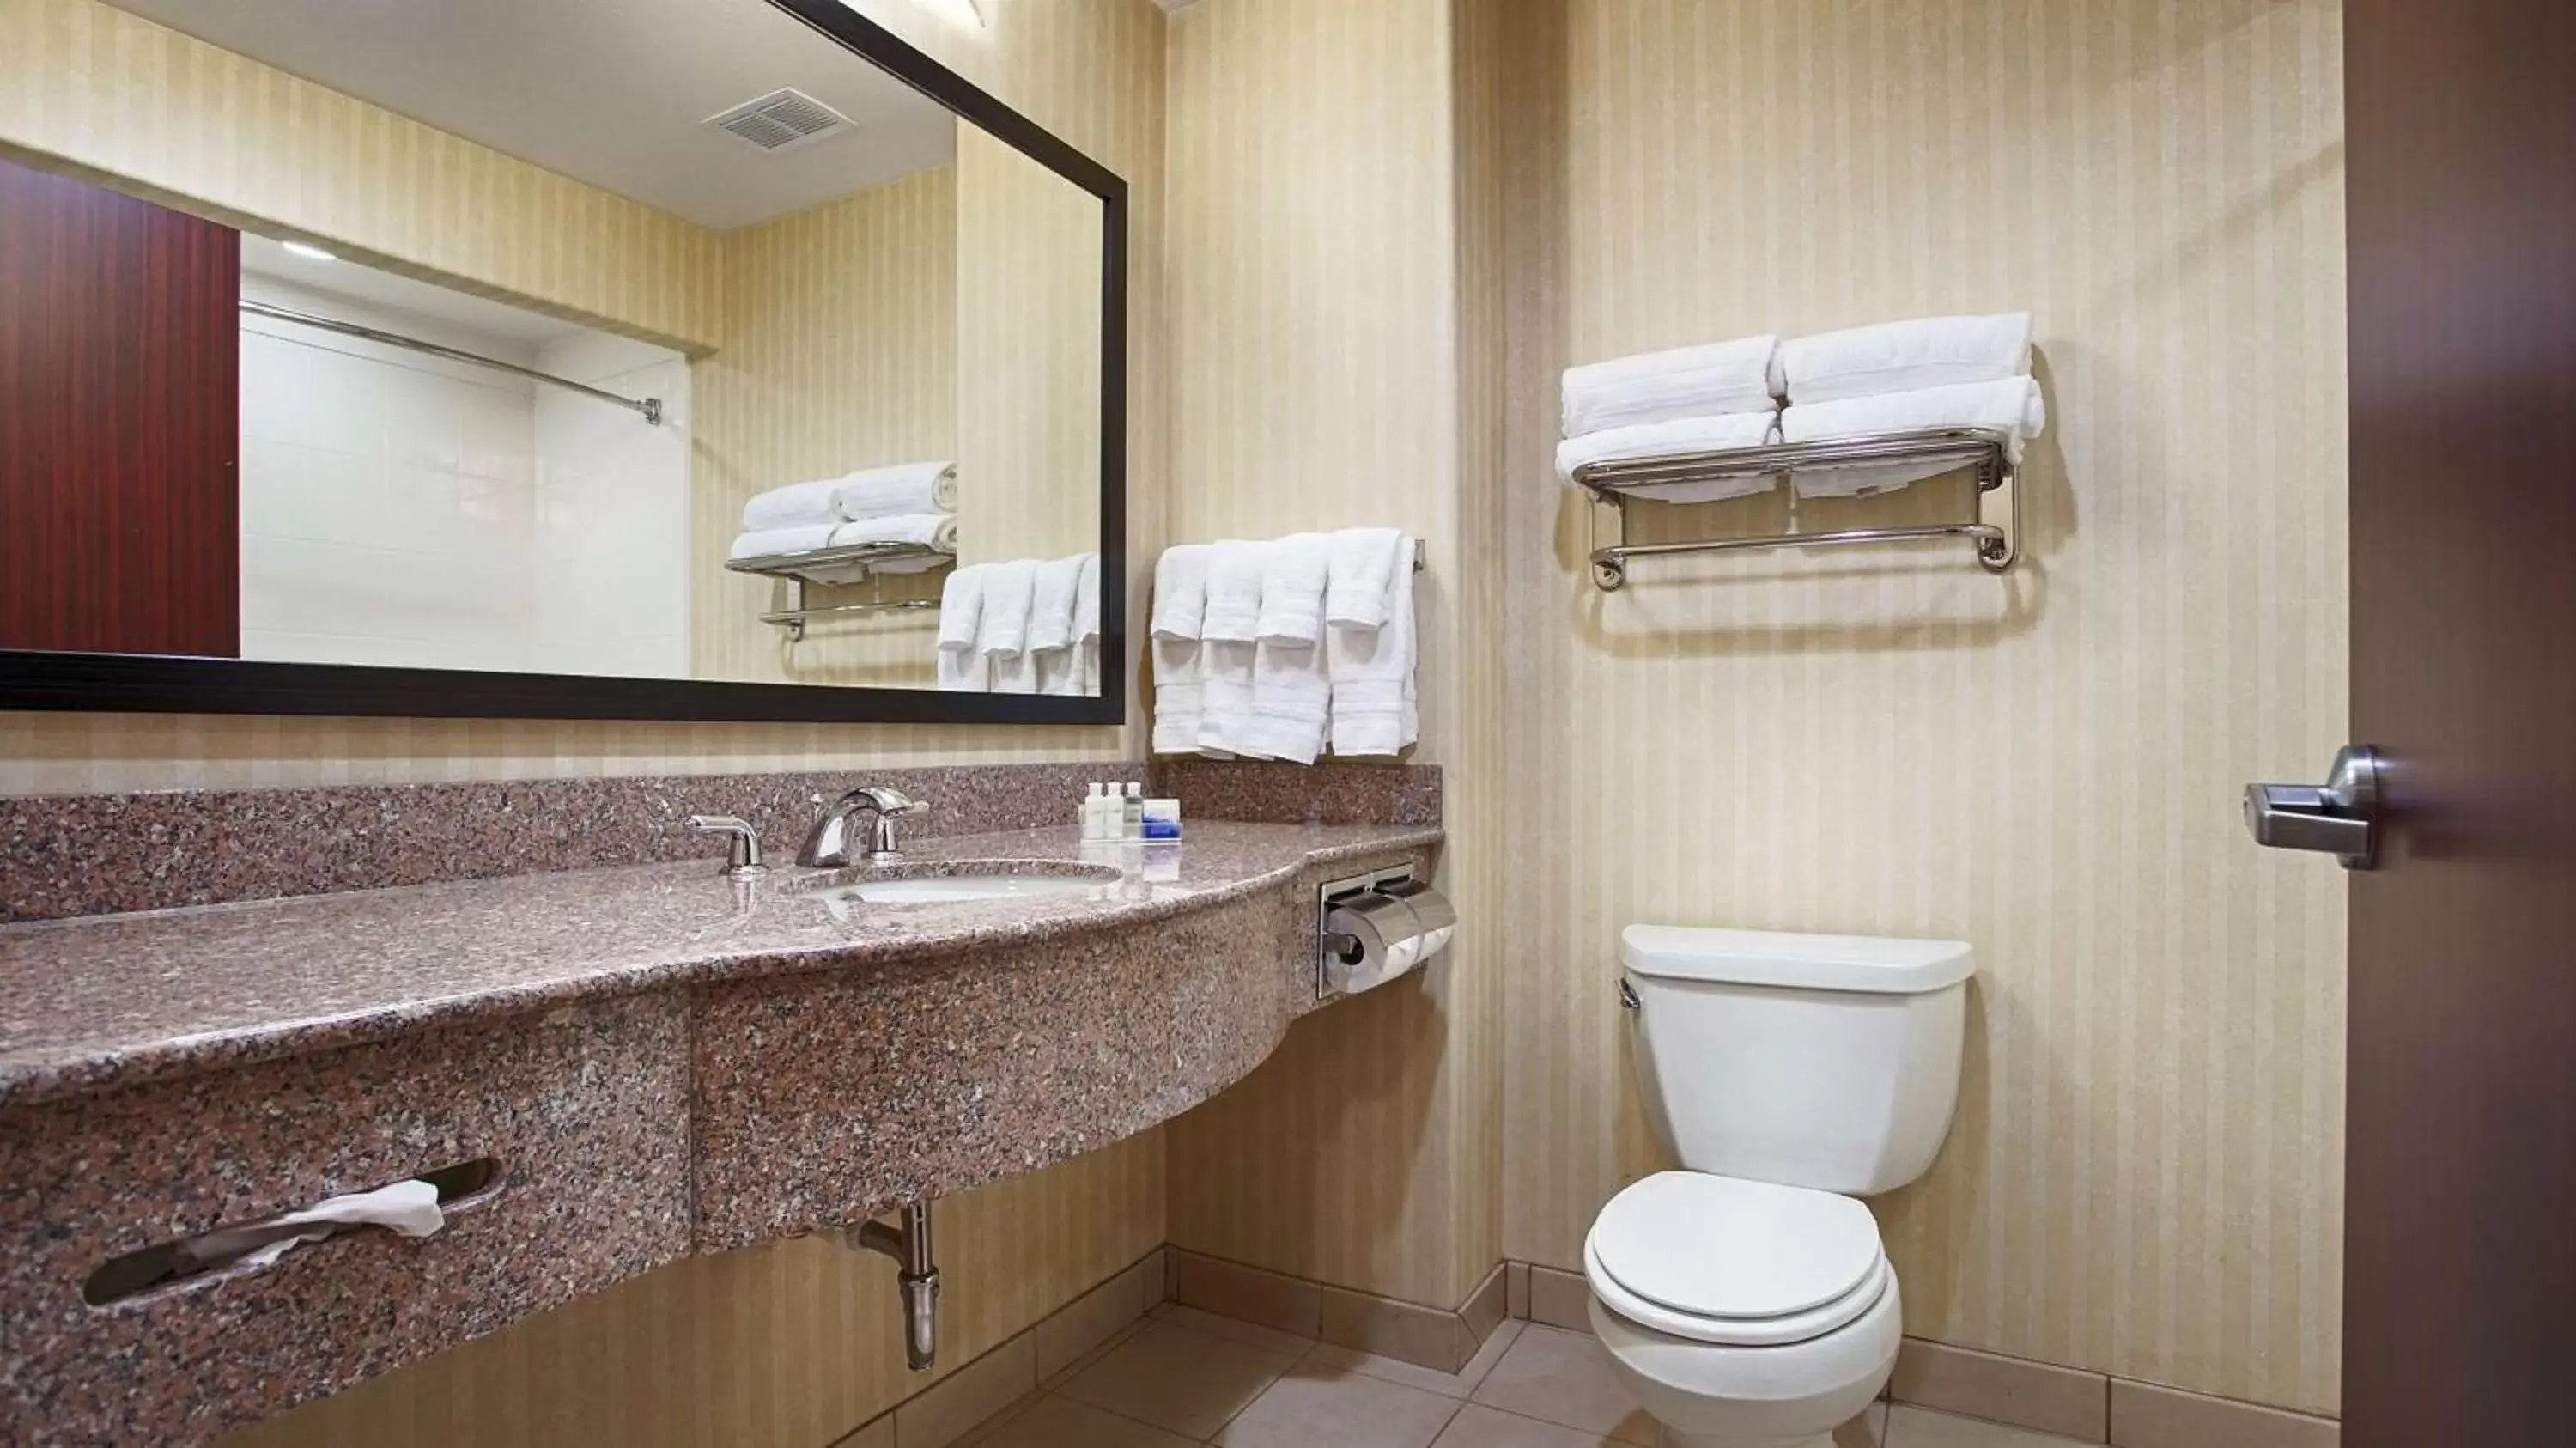 Photo of the whole room, Bathroom in Best Western Plus Waxahachie Inn & Suites